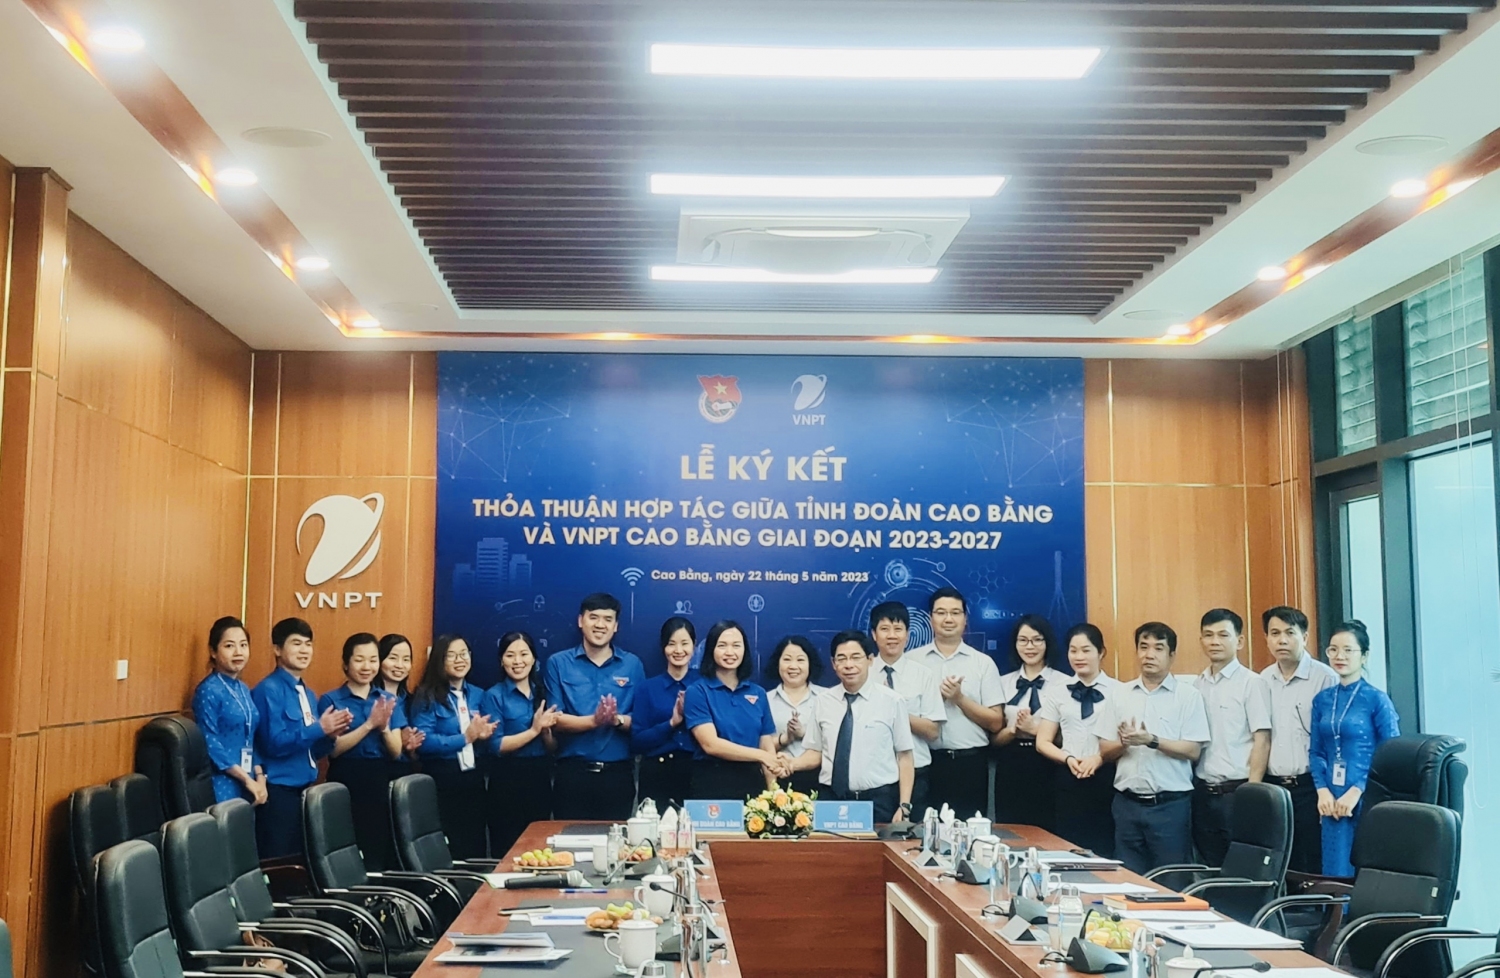 Tỉnh Đoàn Cao Bằng và VNPT Cao Bằng ký kết thỏa thuận hợp tác giai đoạn 2023 - 2027